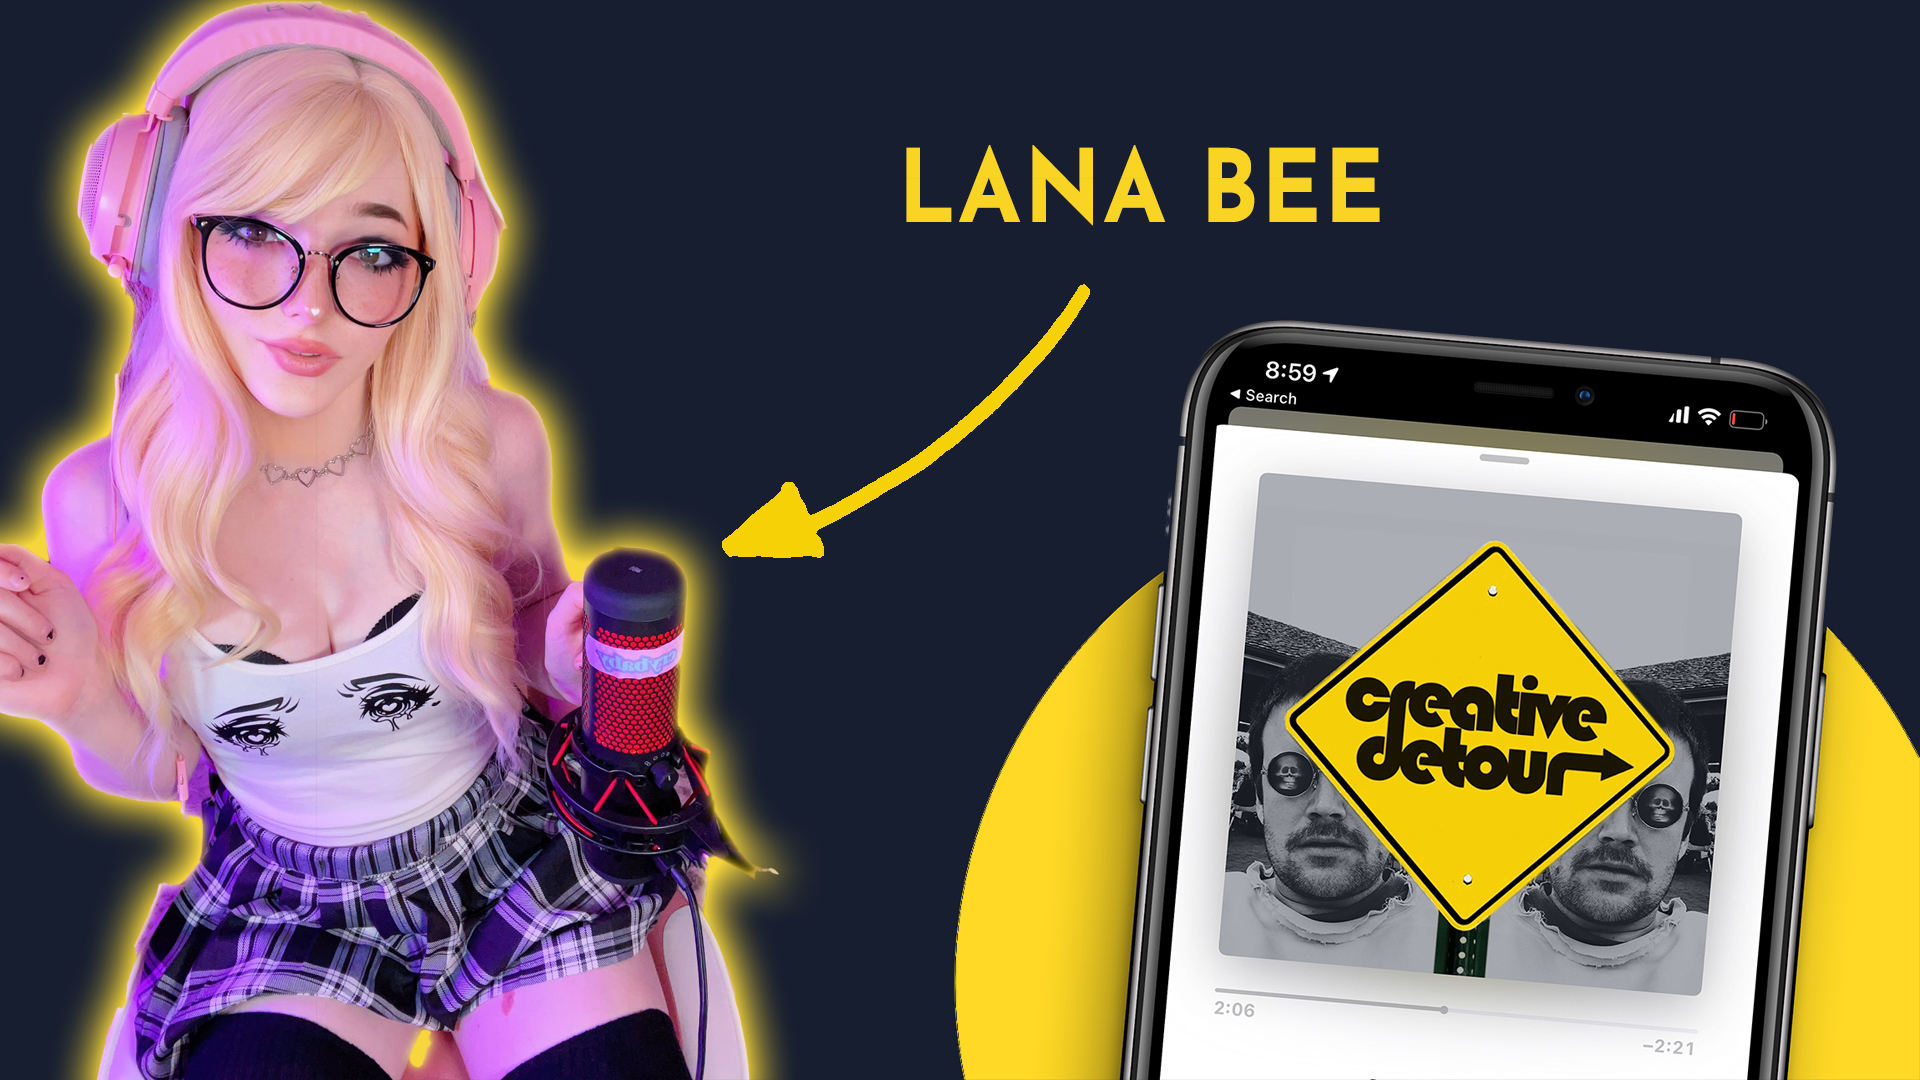 Lana bee onlyfans leaks